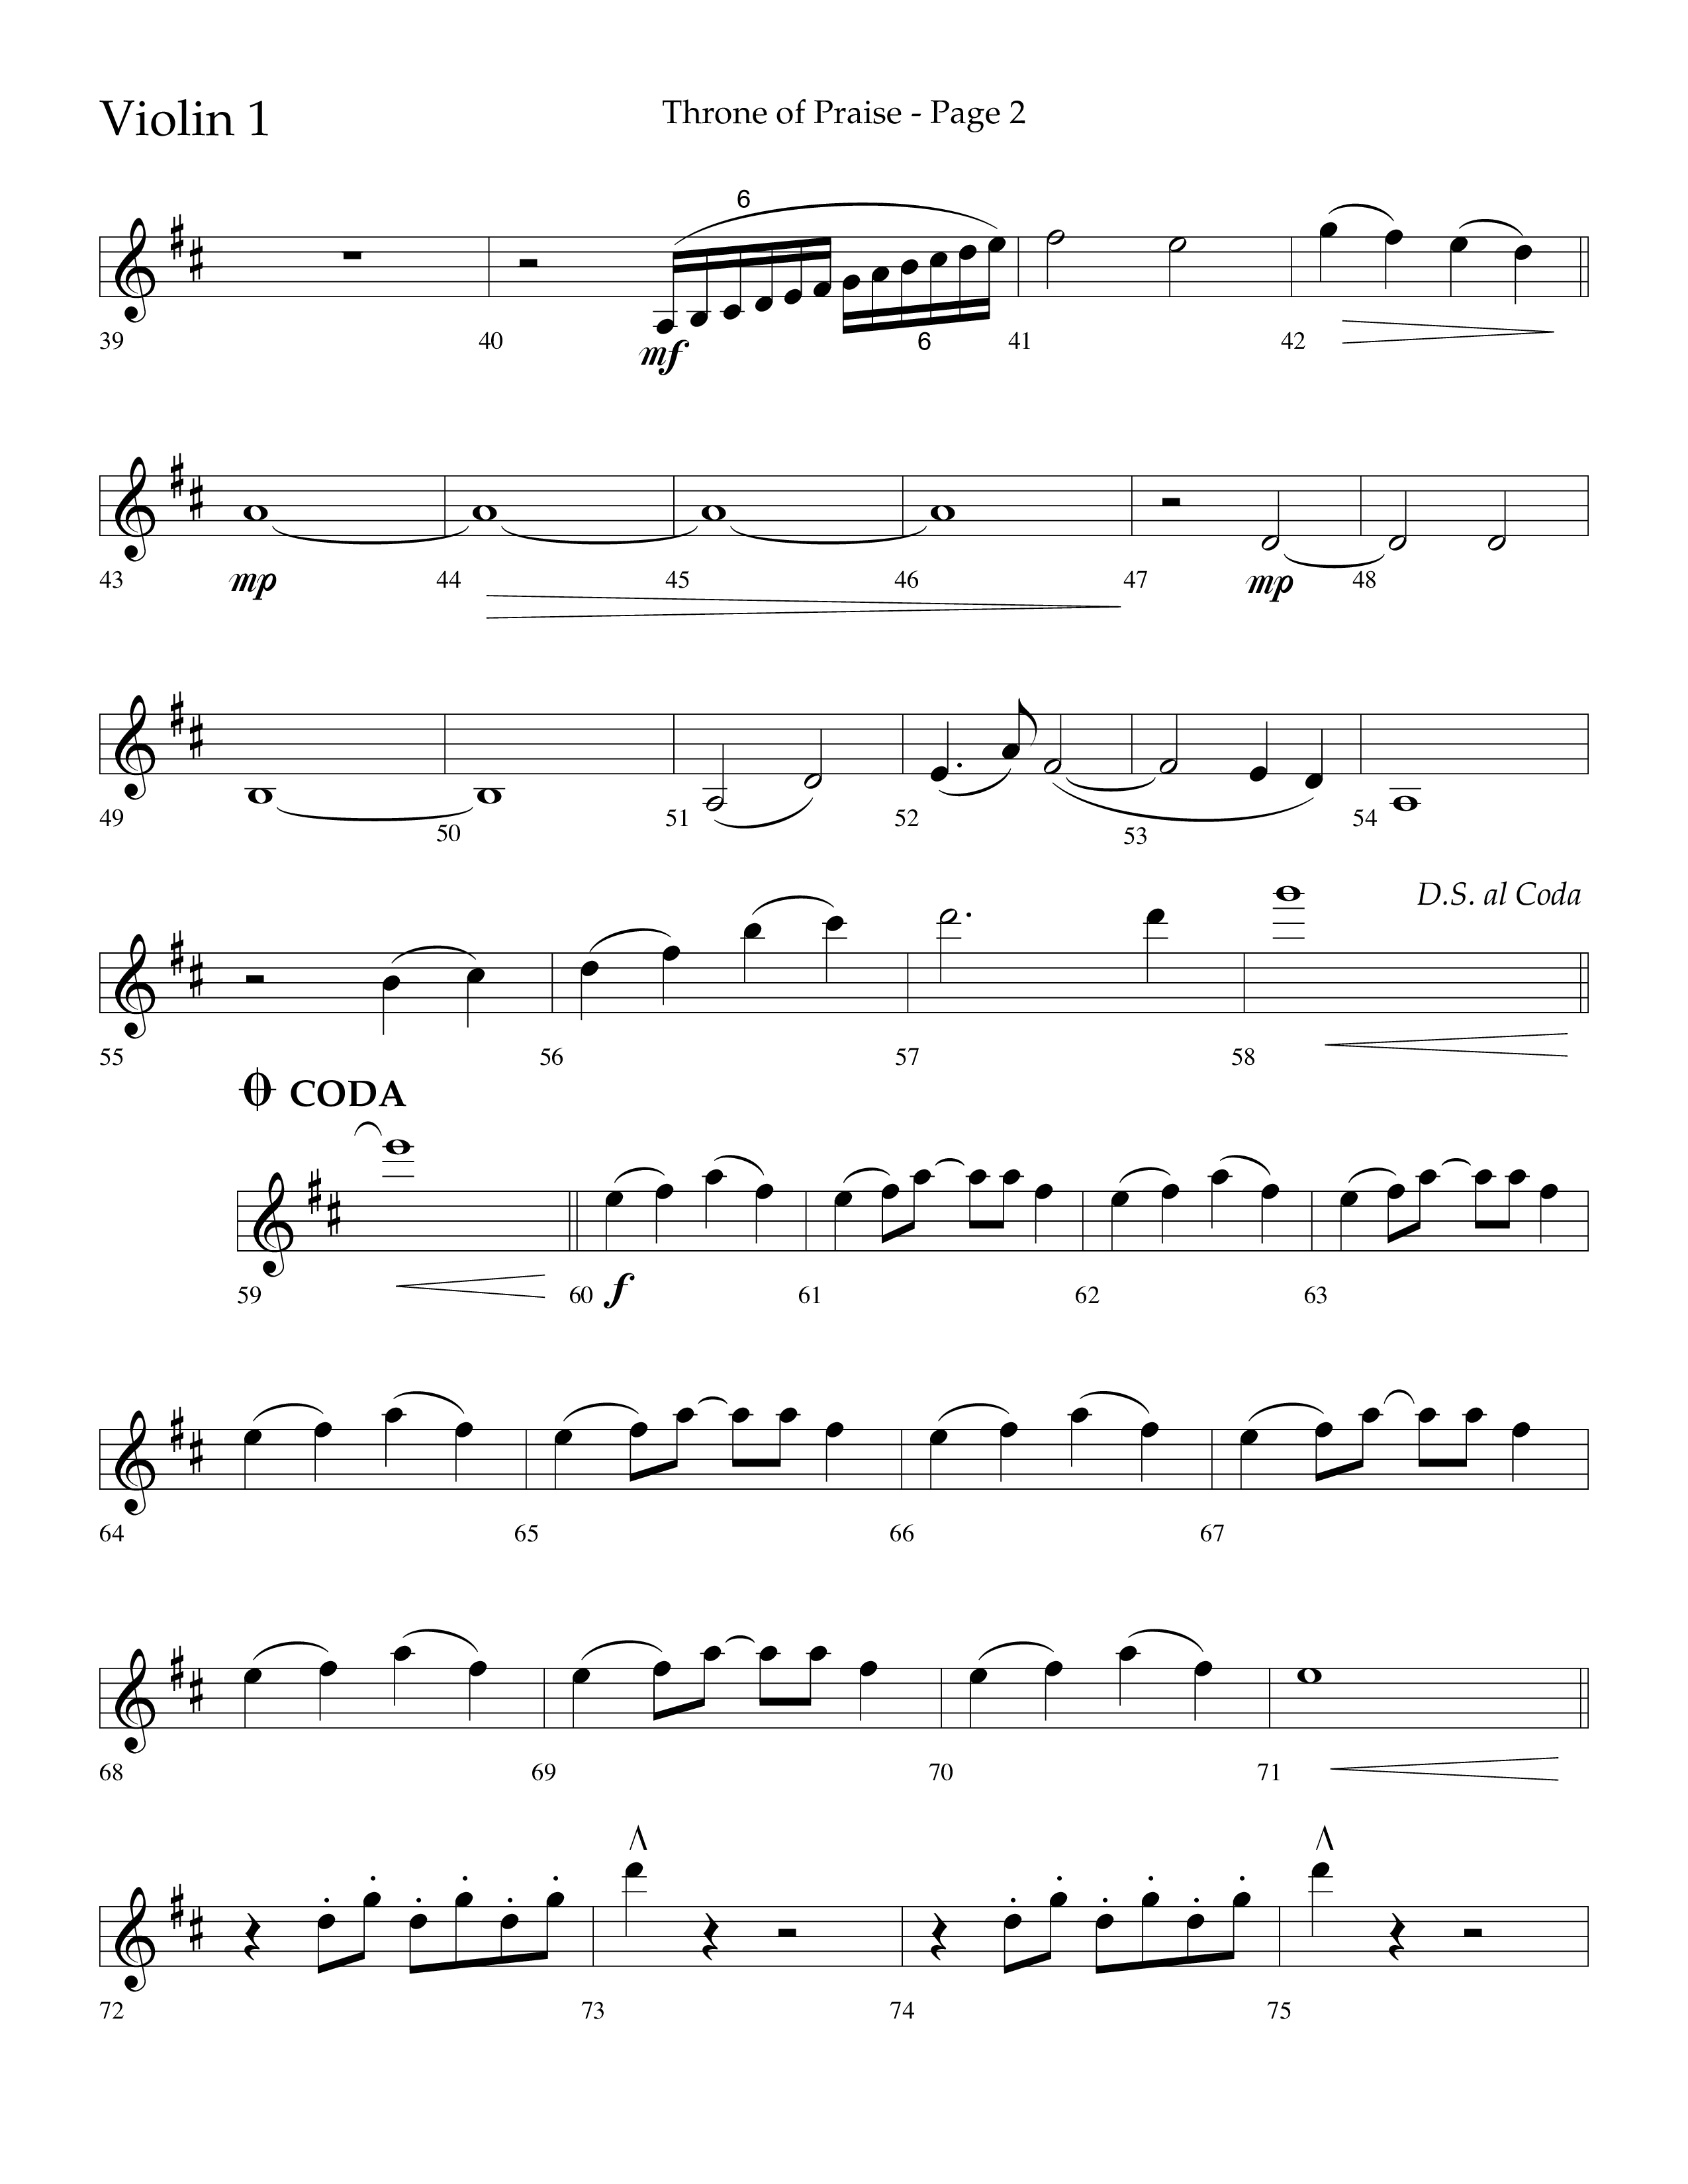 Throne Of Praise (Choral Anthem SATB) Violin 1 (Lifeway Choral / Arr. J. Daniel Smith)